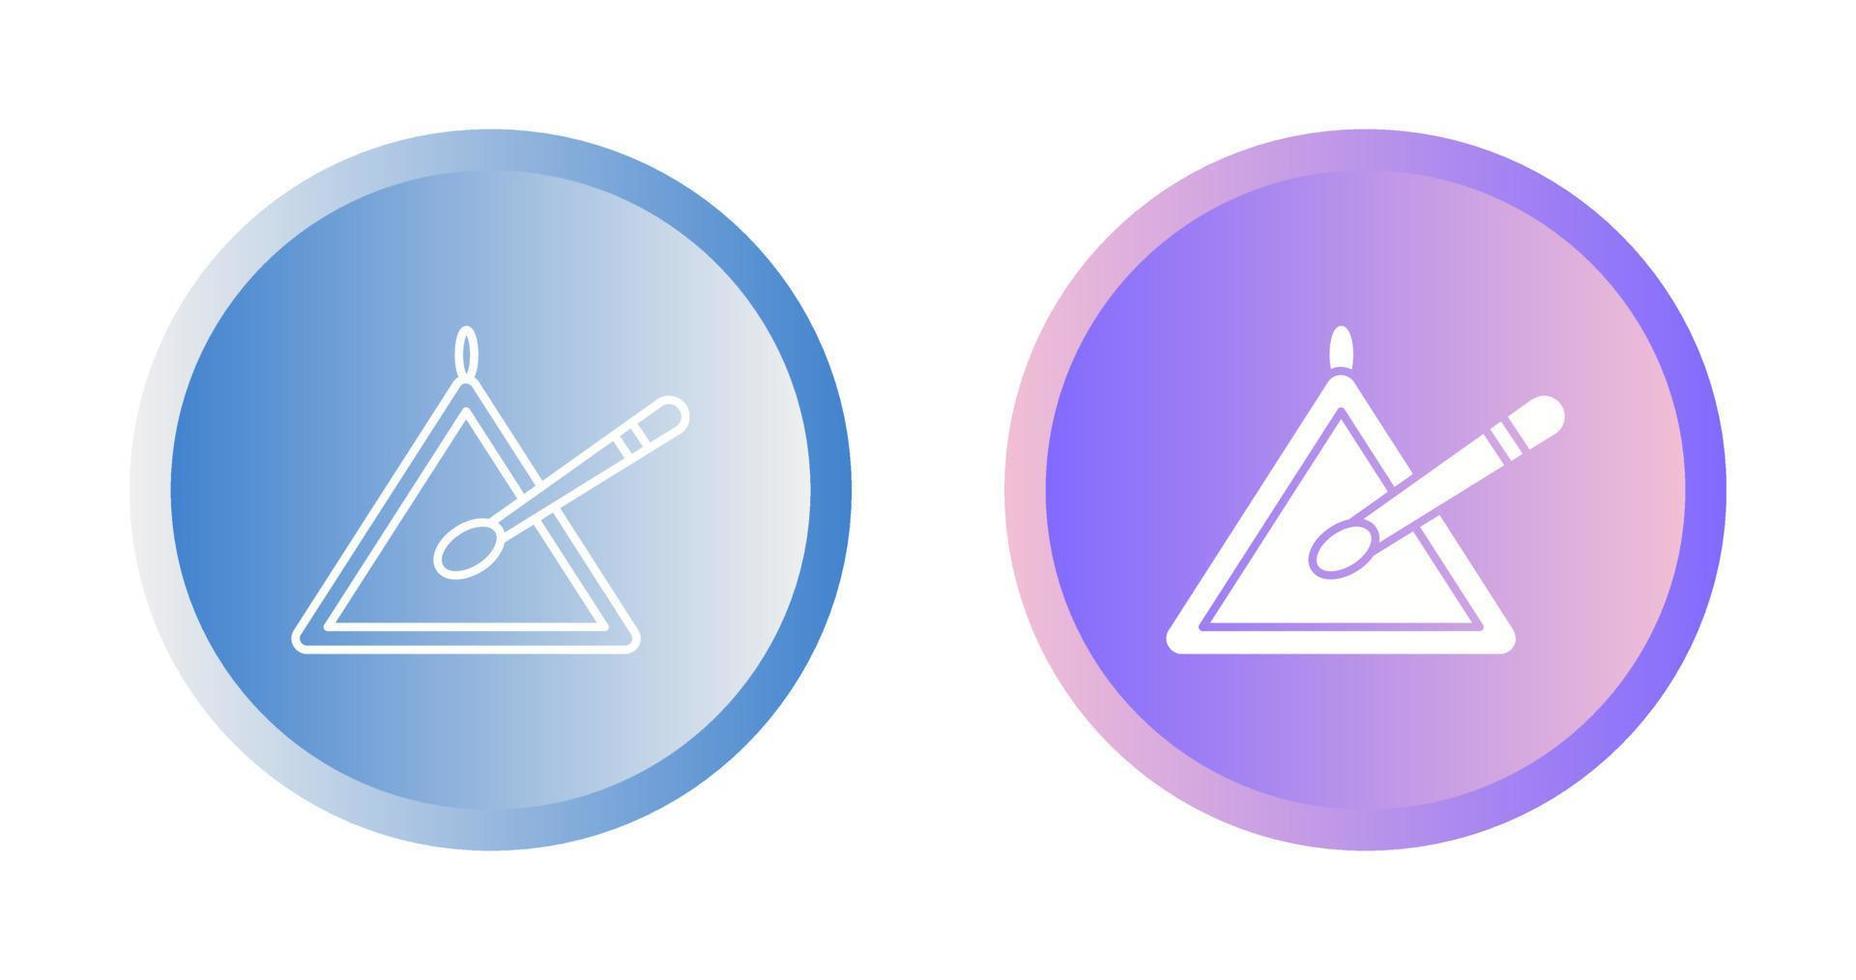 icono de vector de triángulo